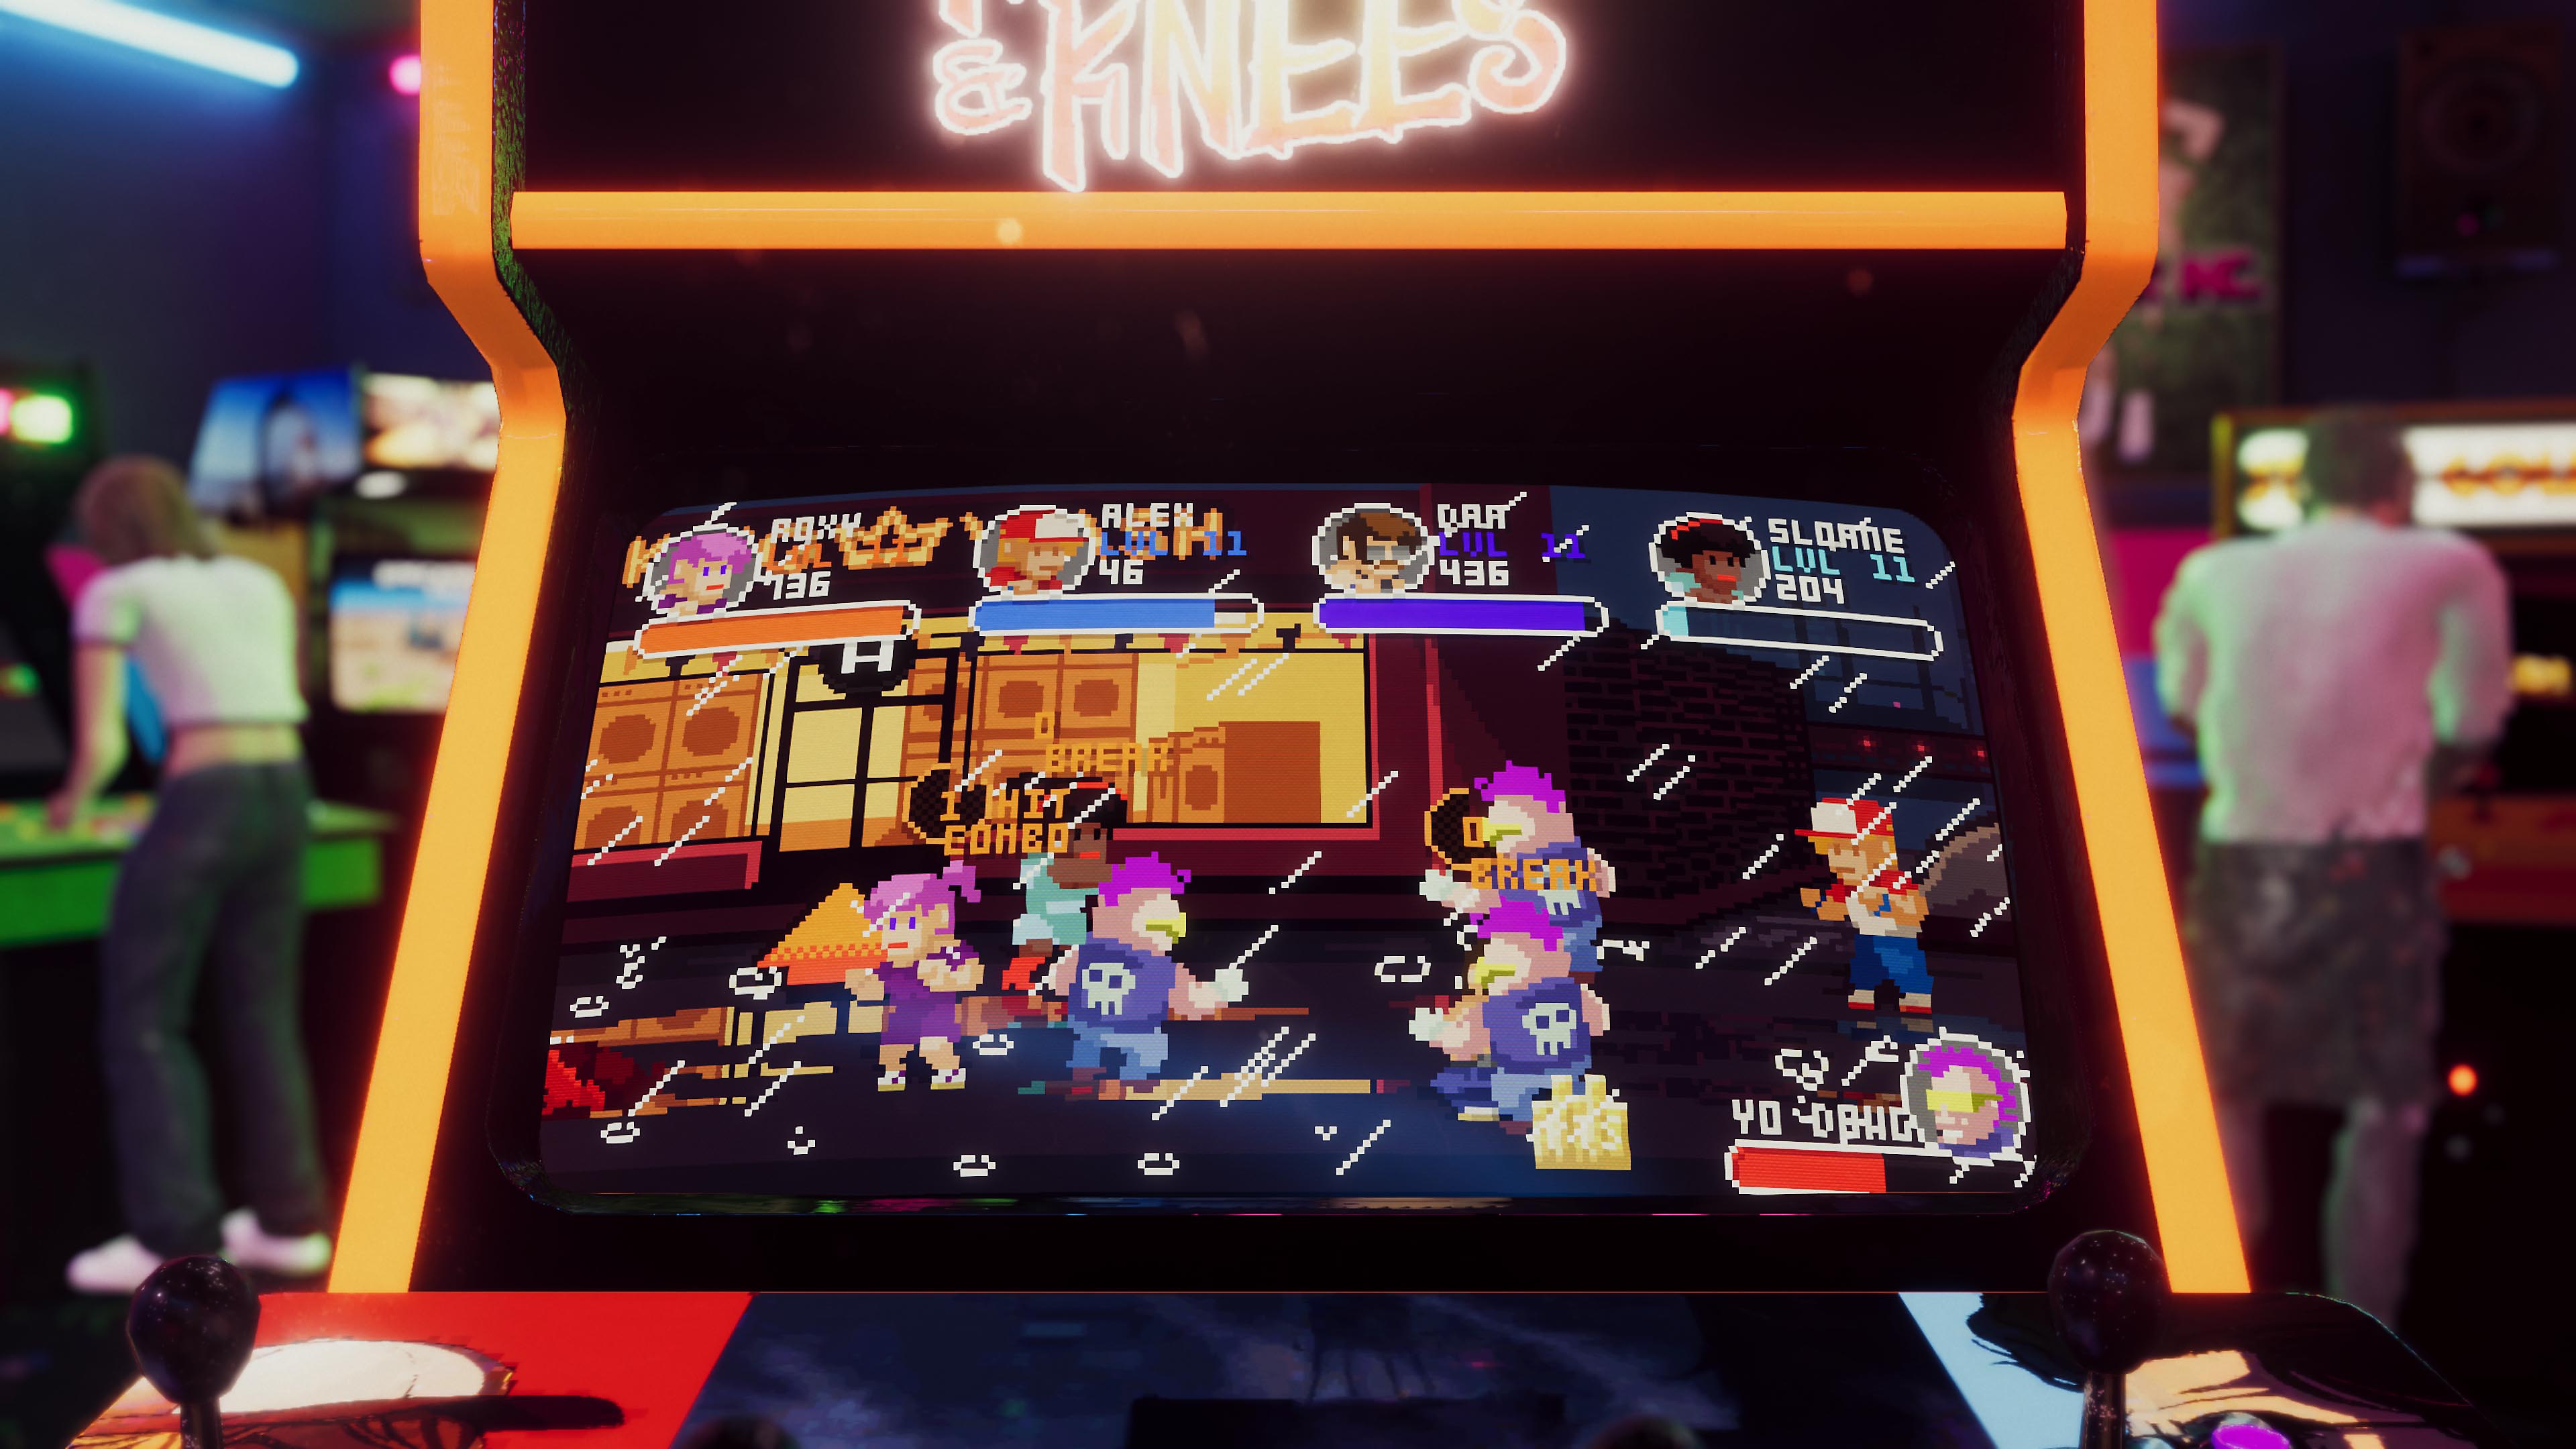 لقطة شاشة للعبة Arcade Paradise تعرض جهاز ألعاب به لعبة آركيد كلاسيكية